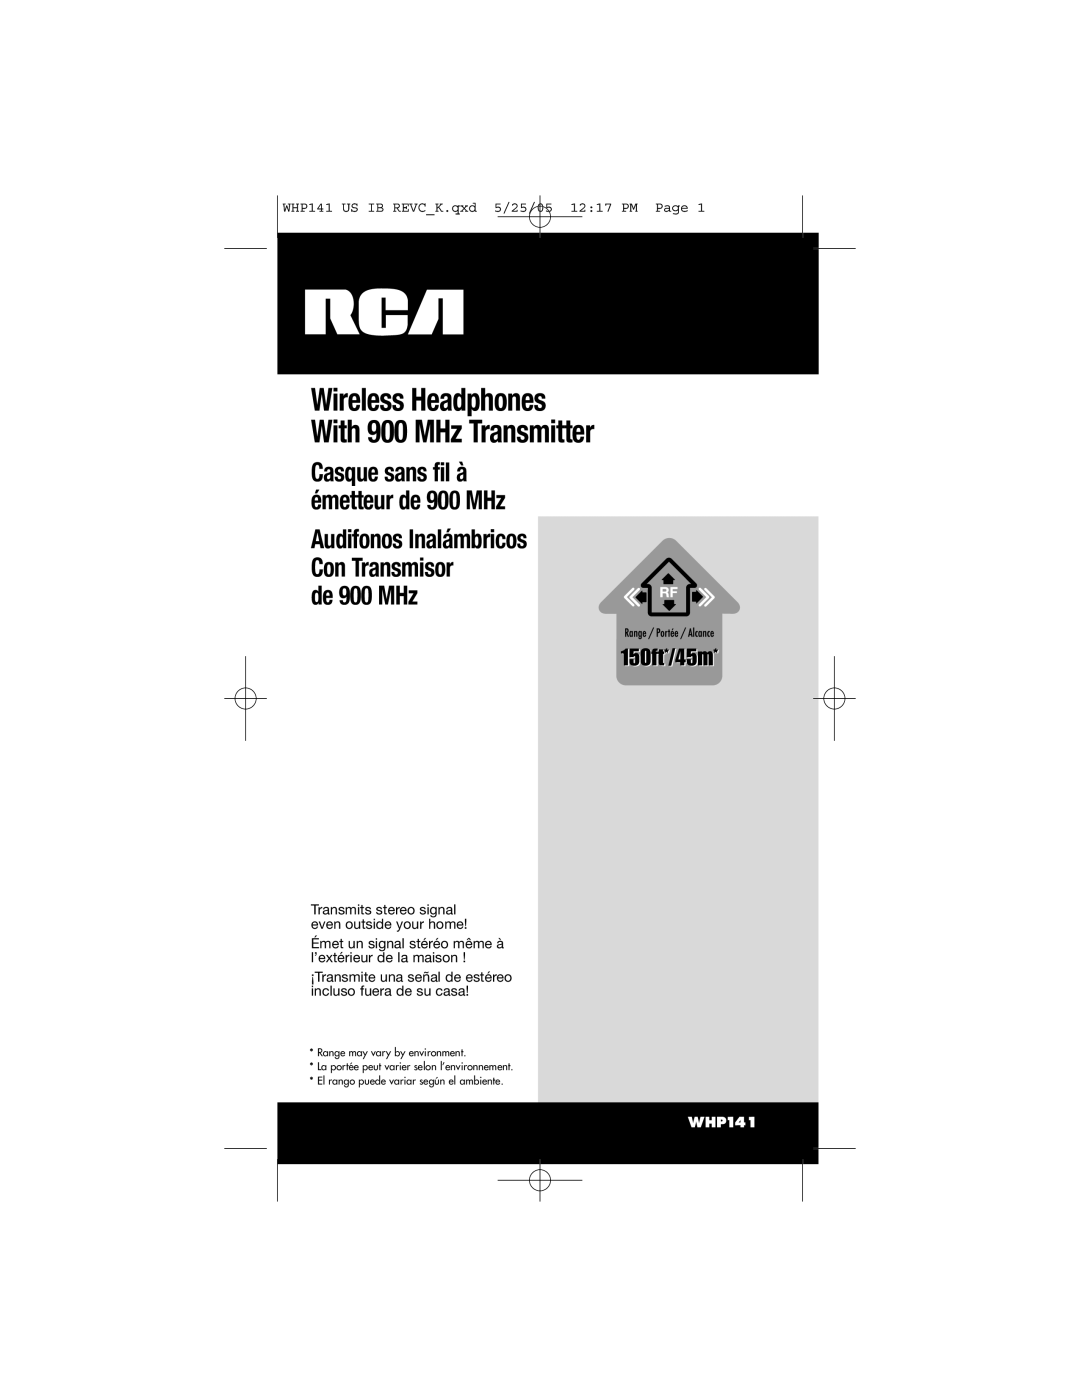 RCA WHP141 manual Wireless Headphones With 900 MHz Transmitter, Casque sans fil à émetteur de 900 MHz 